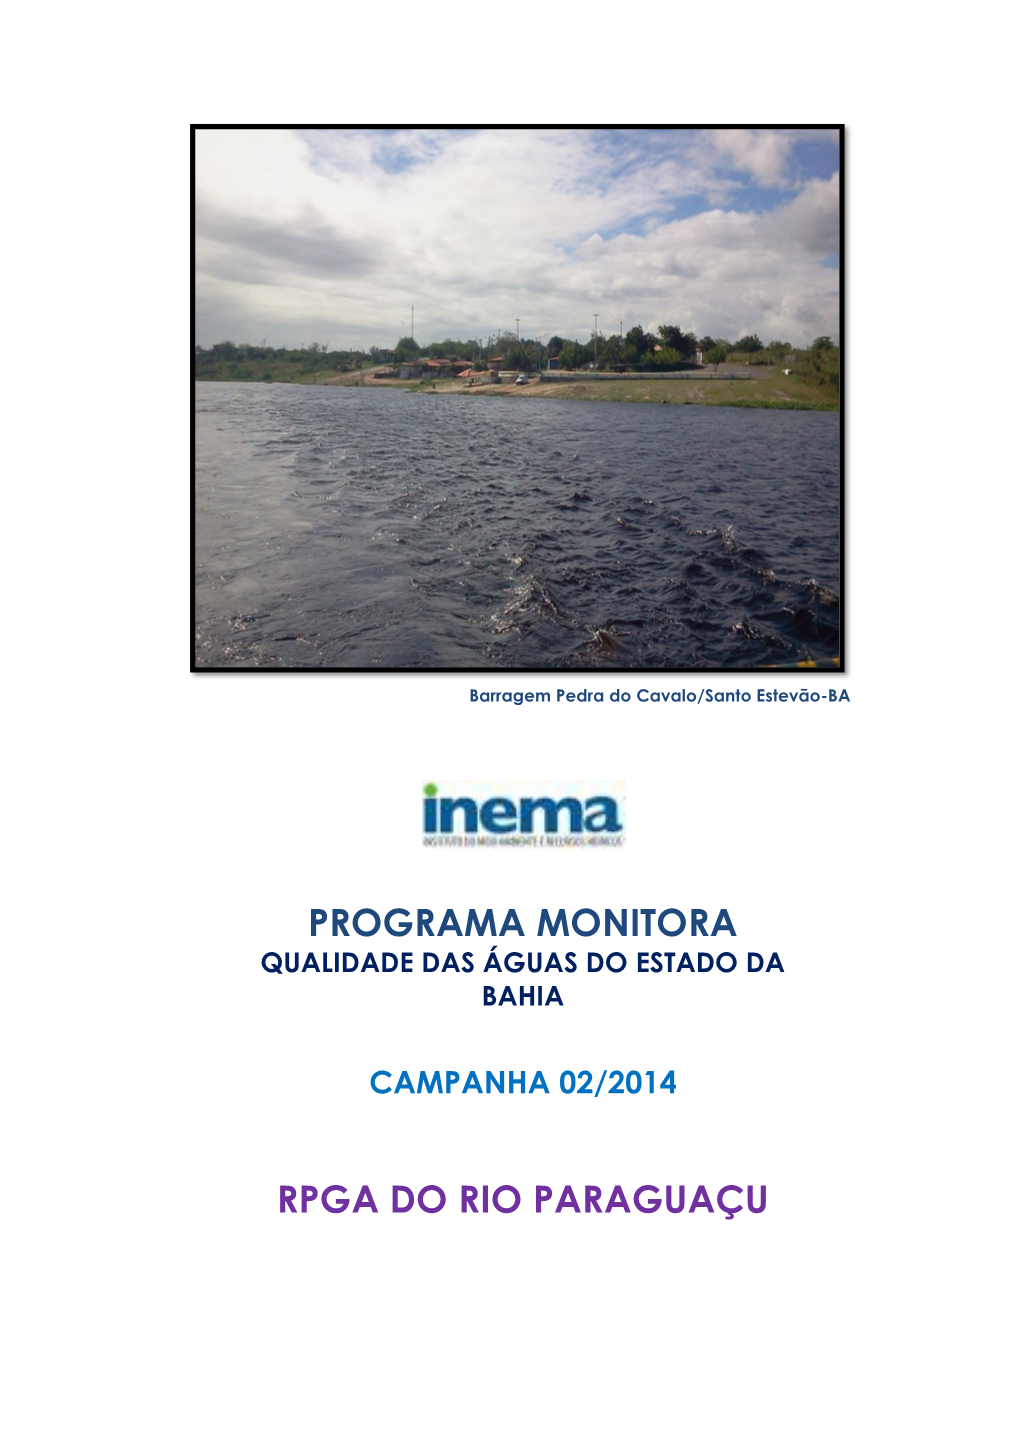 Programa MONITORA RPGA Do Rio Paraguaçu